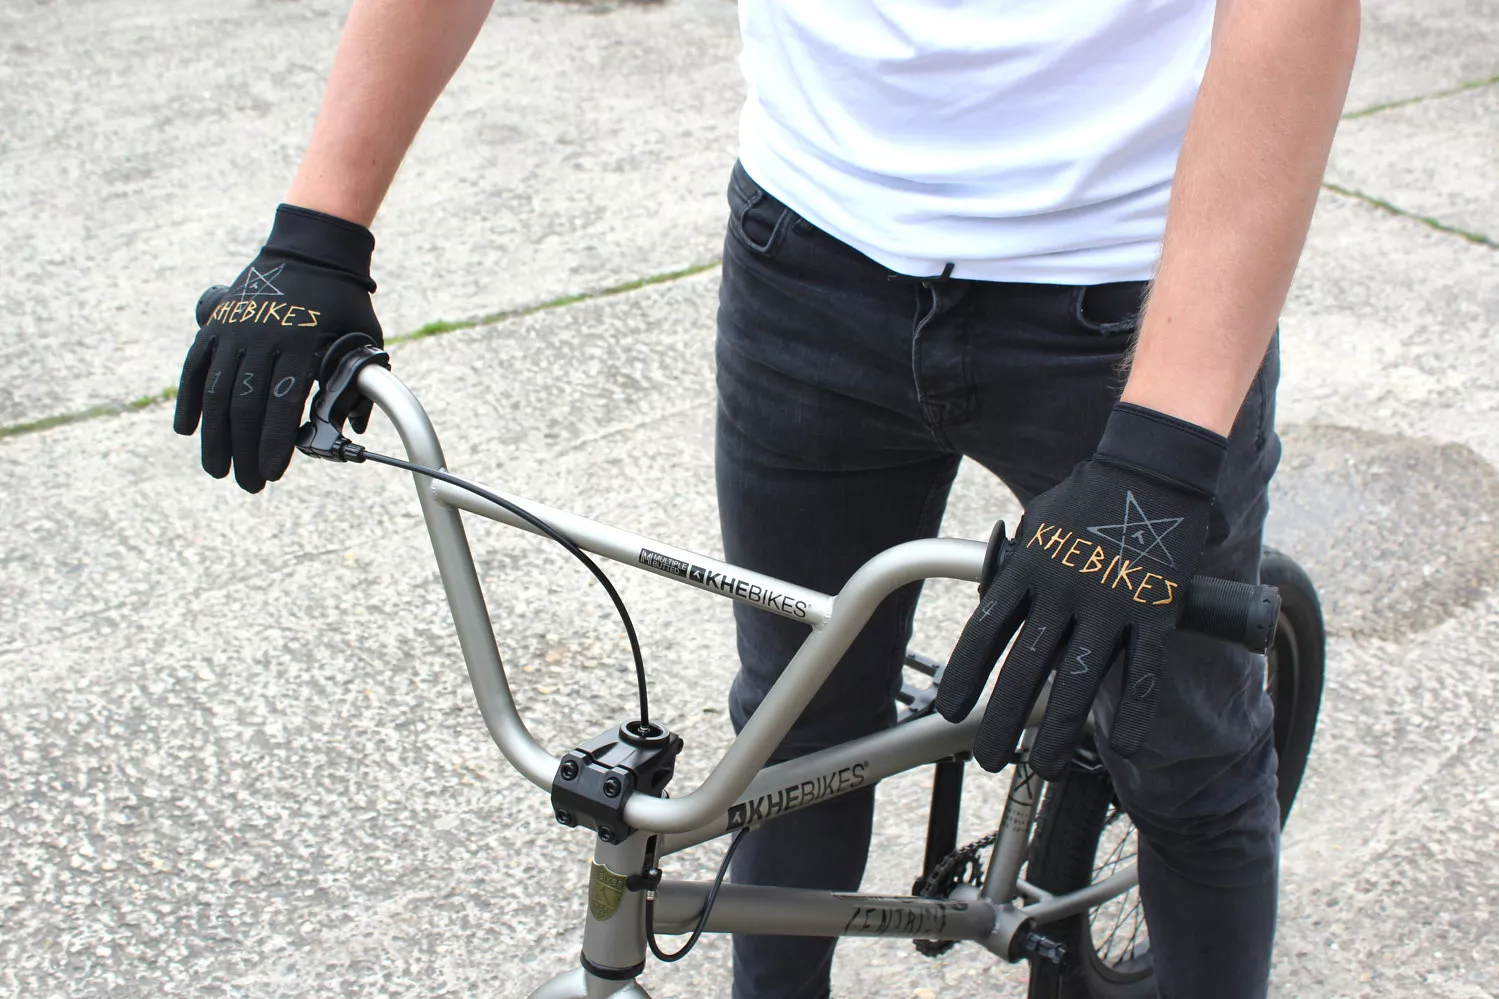 BMX Handschuhe KHE 4130 L